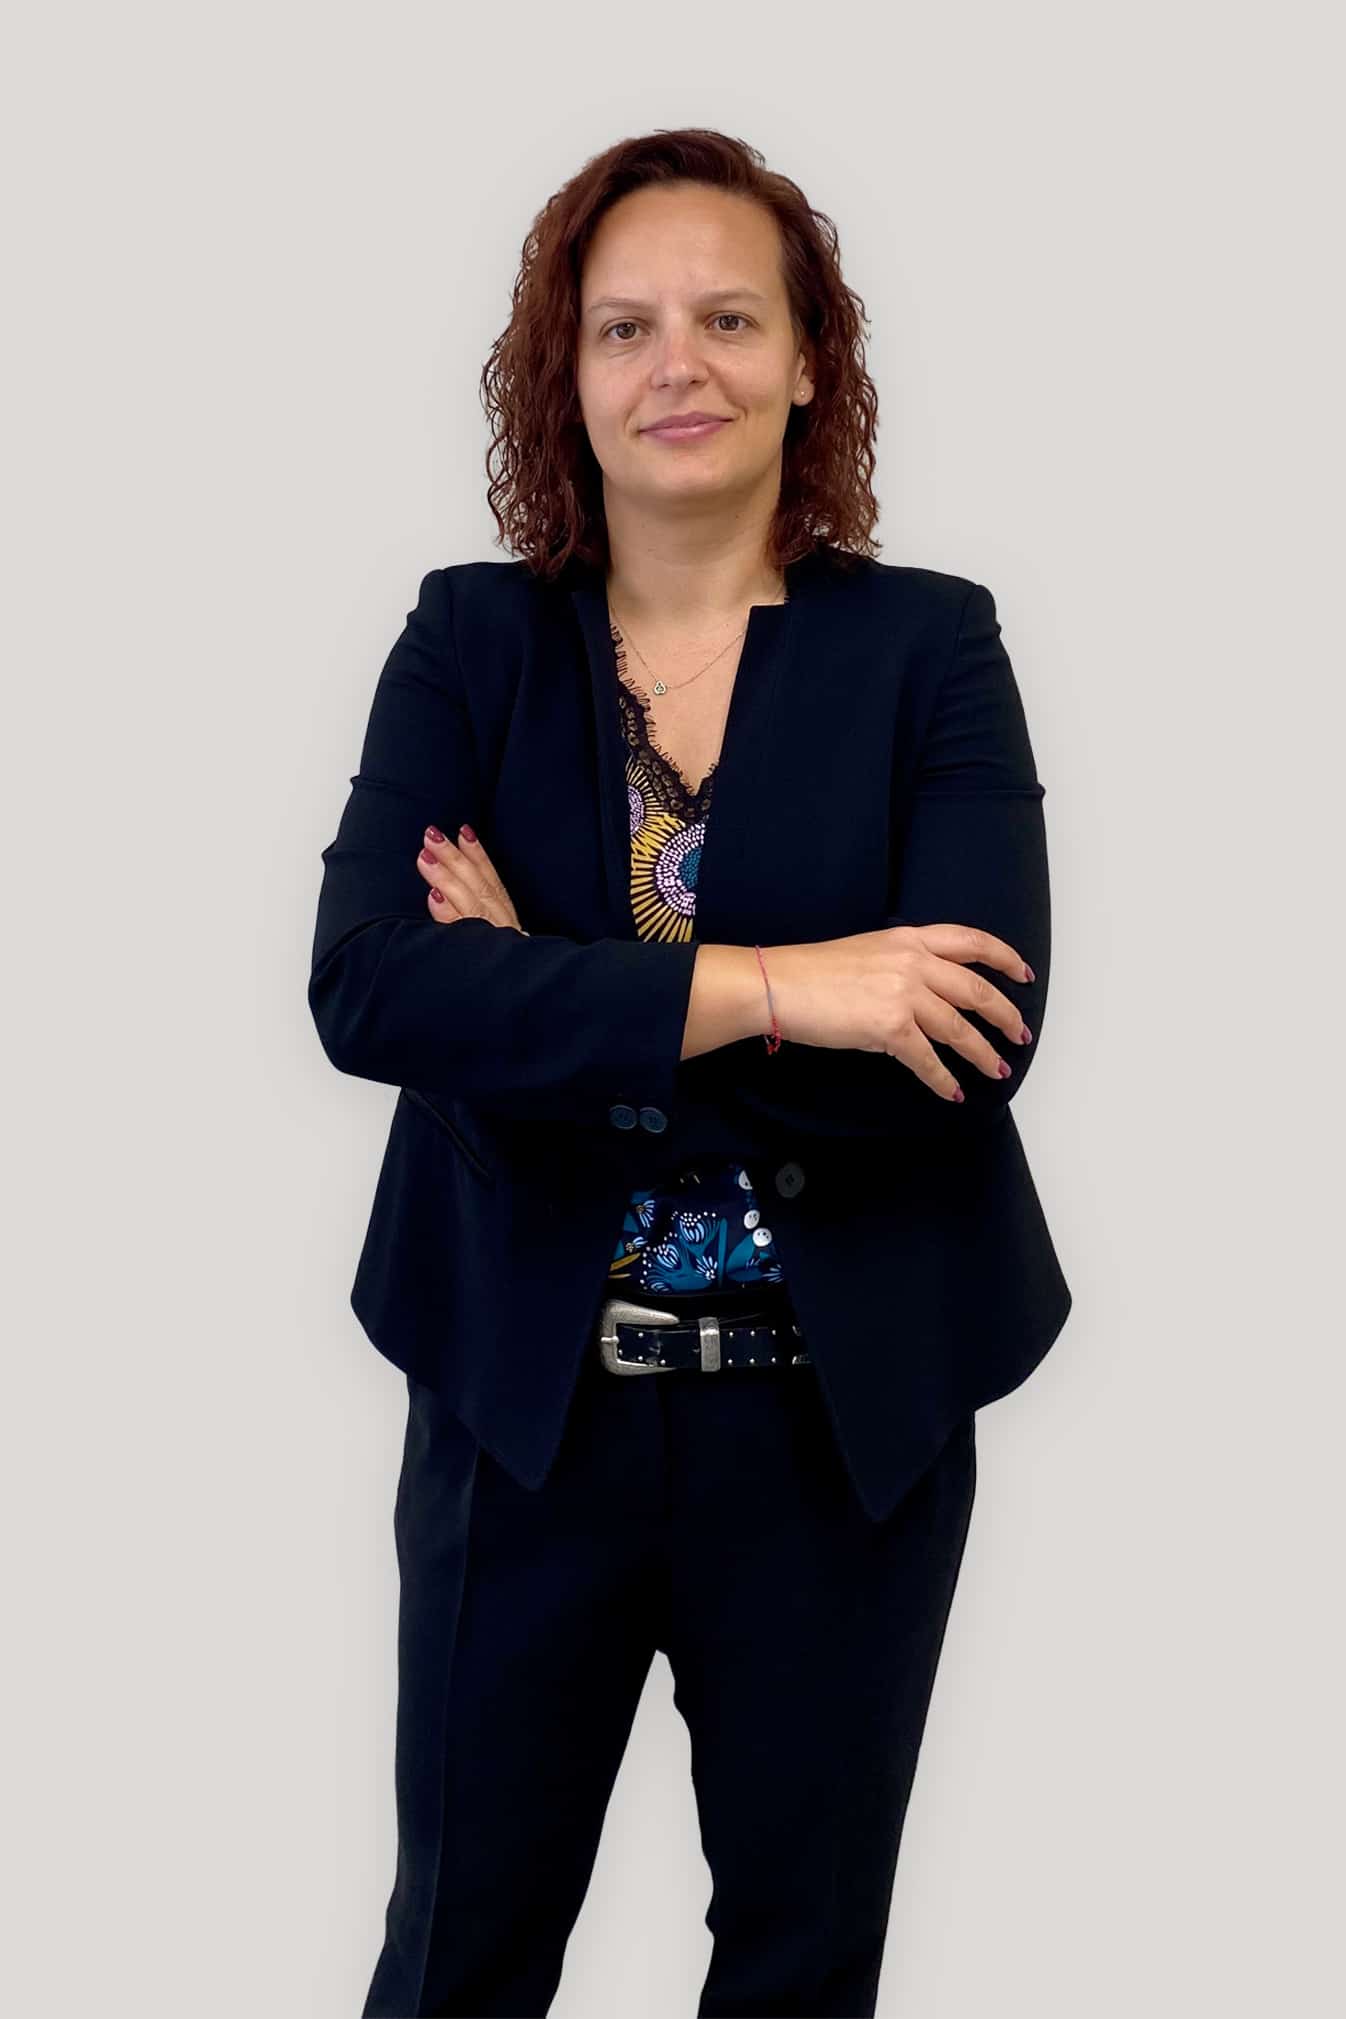 Ing. Chiara Magnani